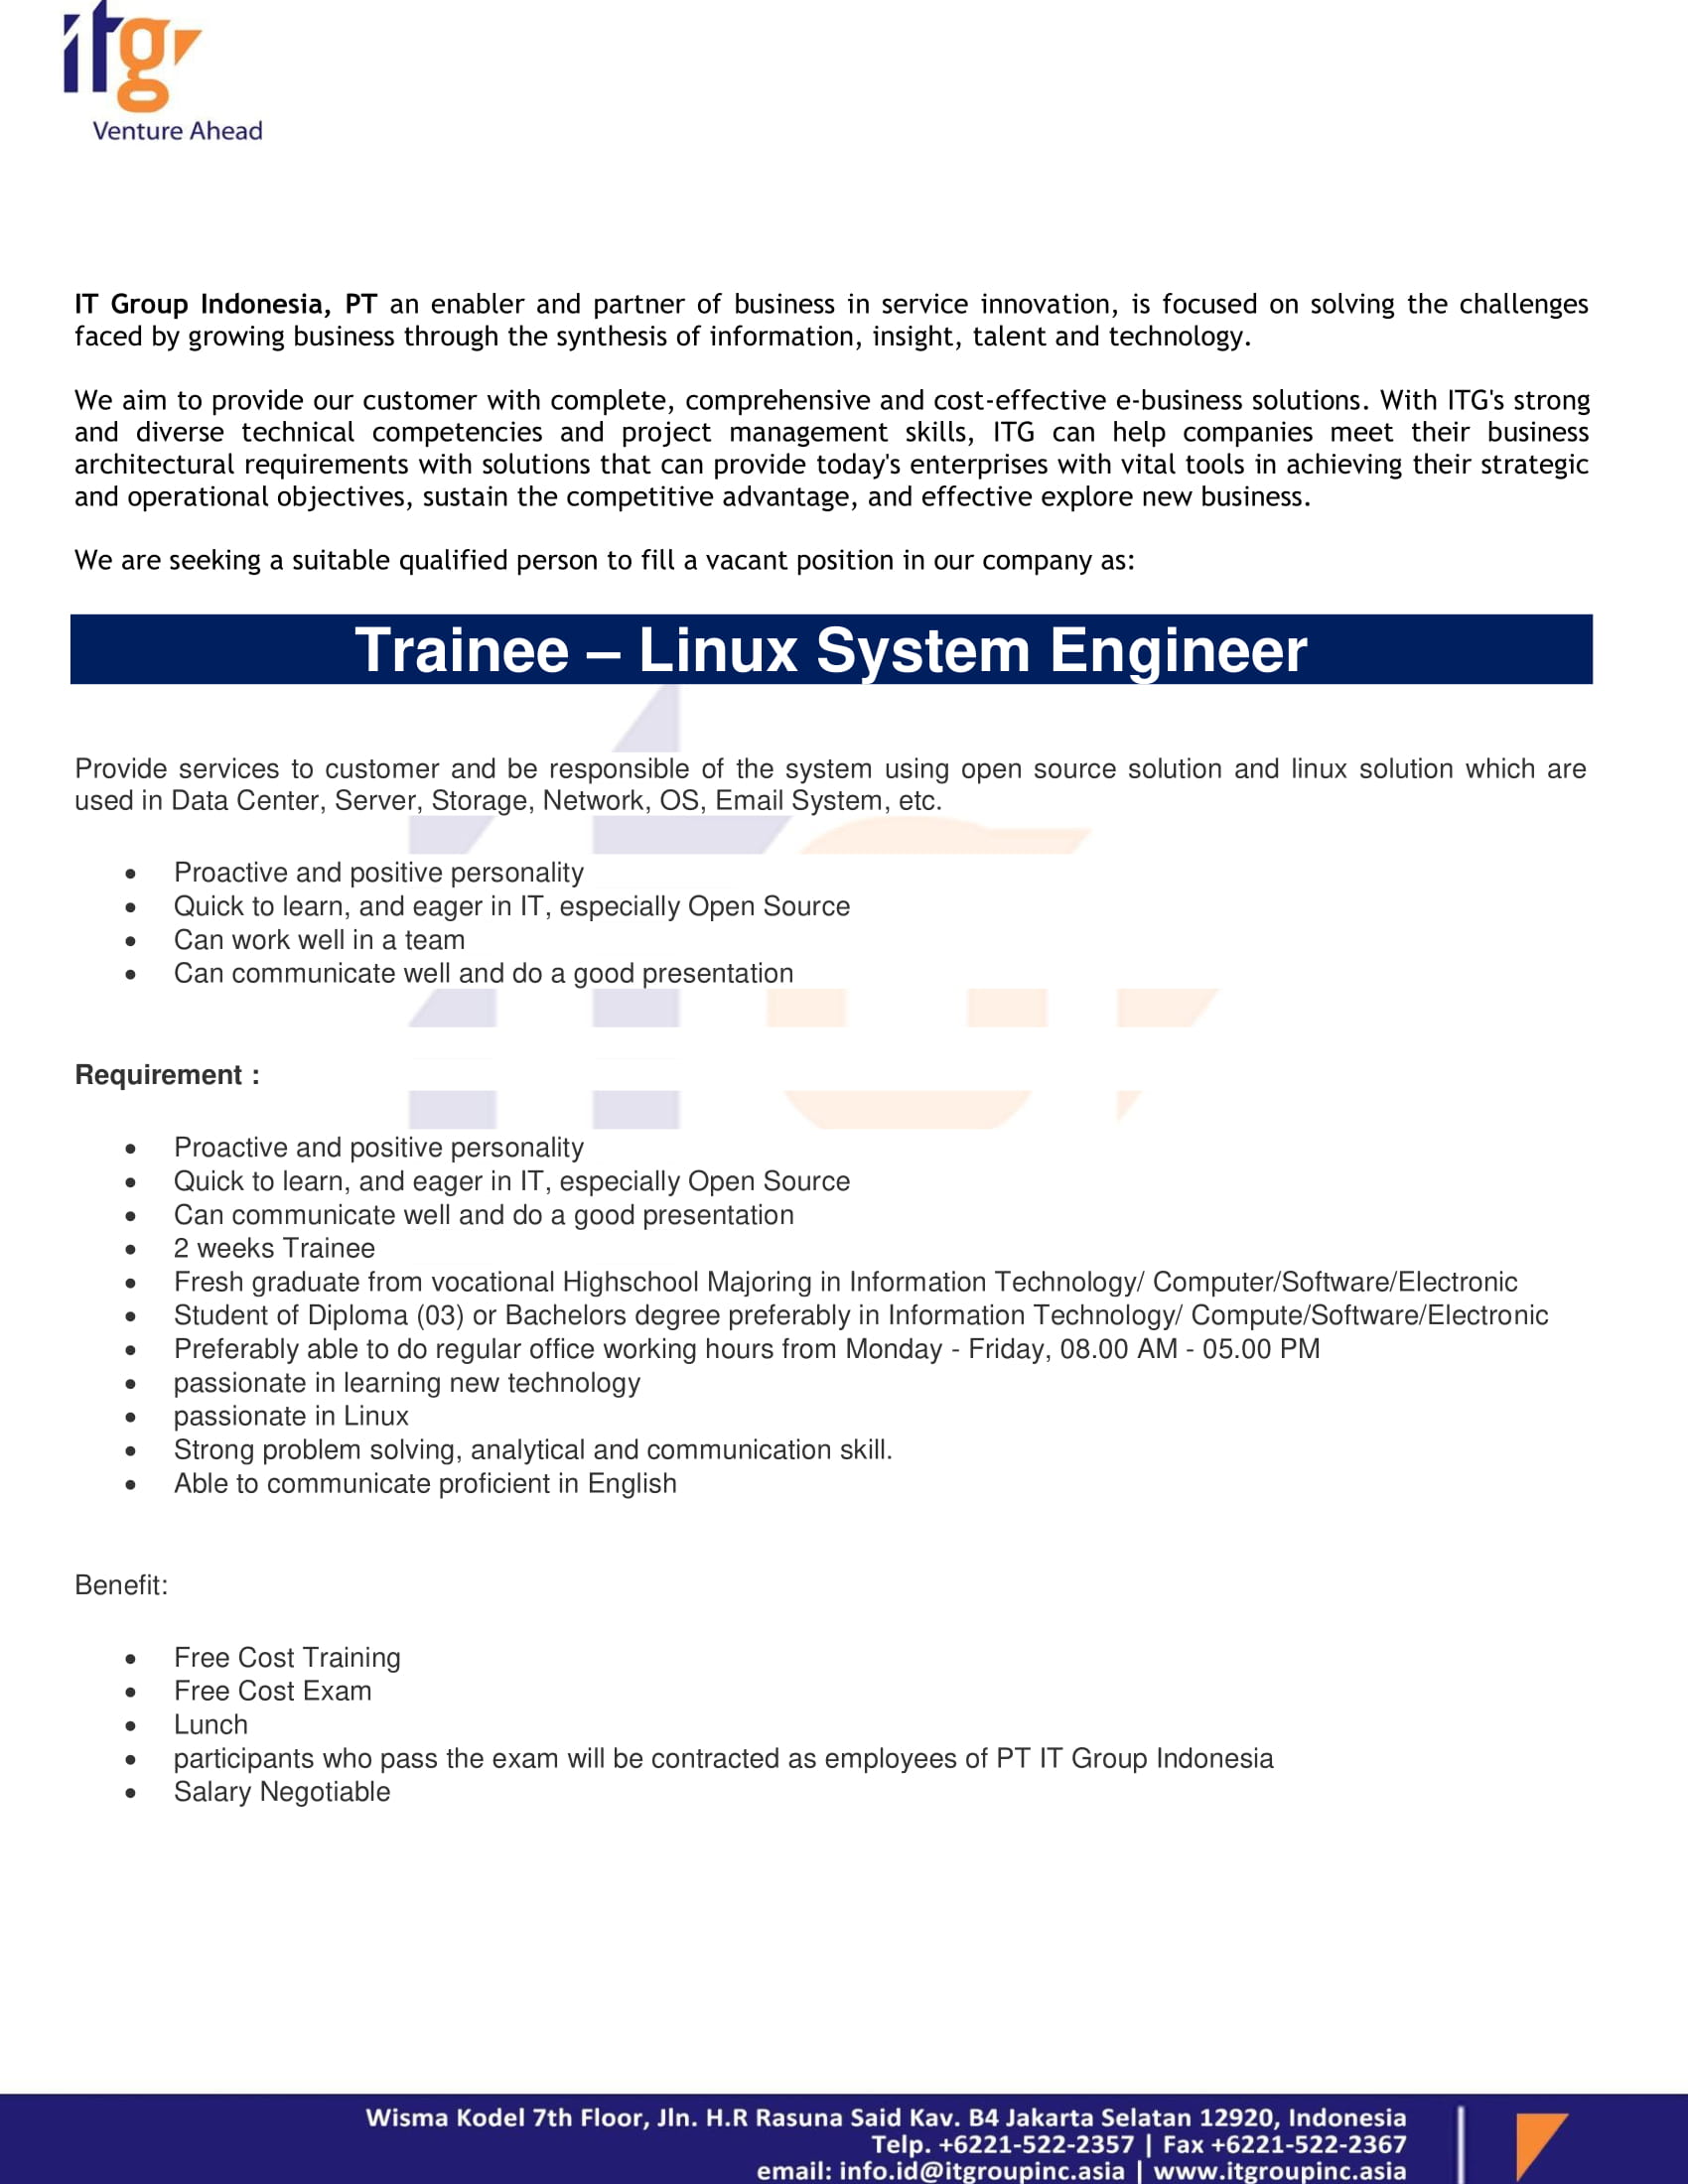 materi-trainee-linux-system-engineer-1.jpg